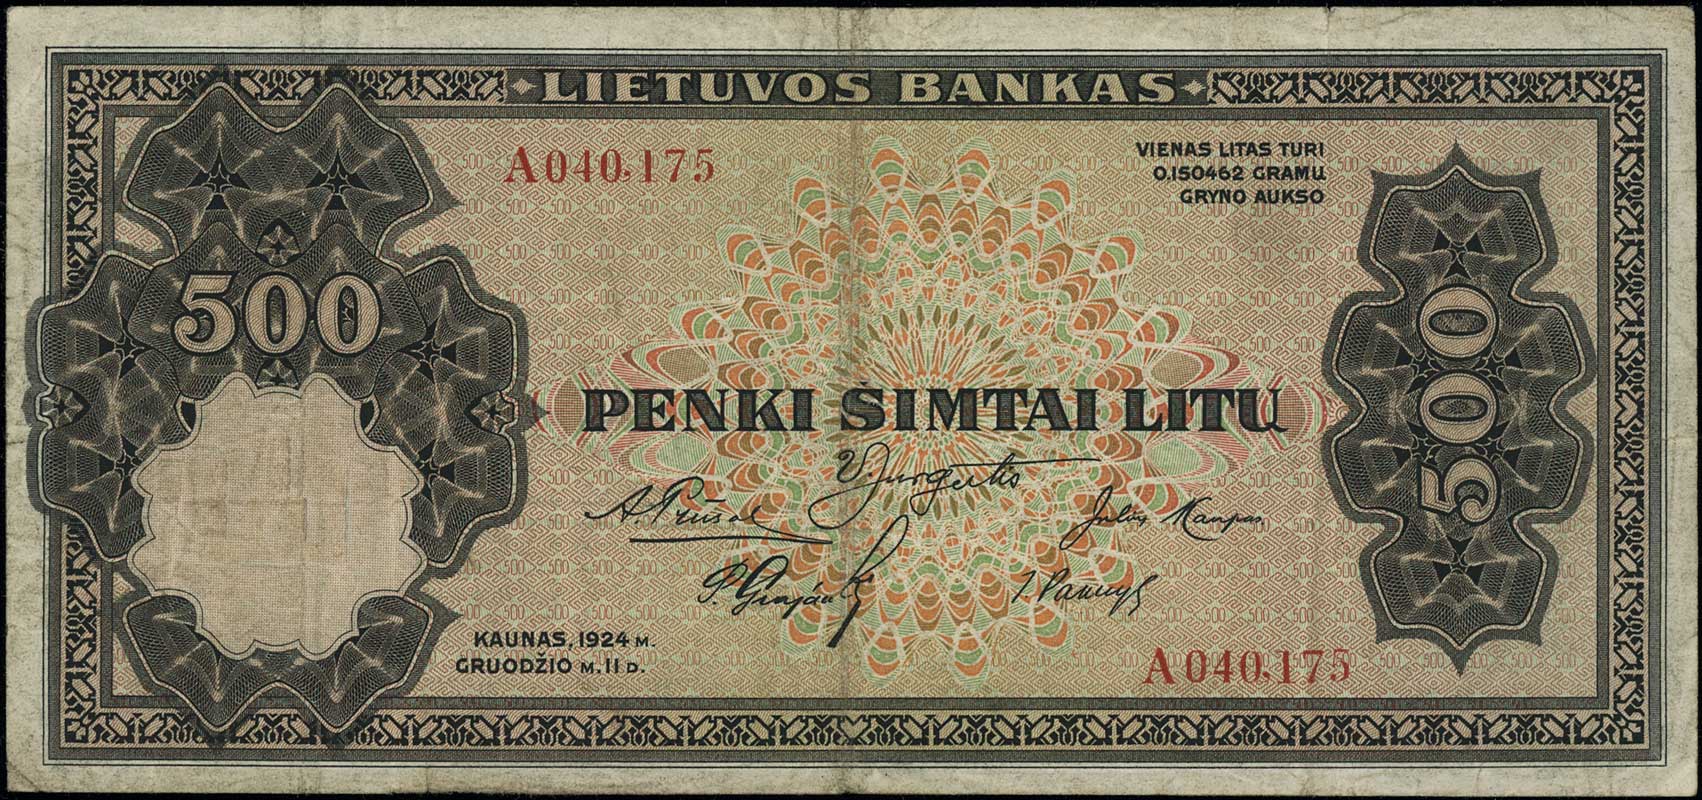 500 litu 11.12.1924, seria A, numeracja 040175, Pick 21.a, rzadkie